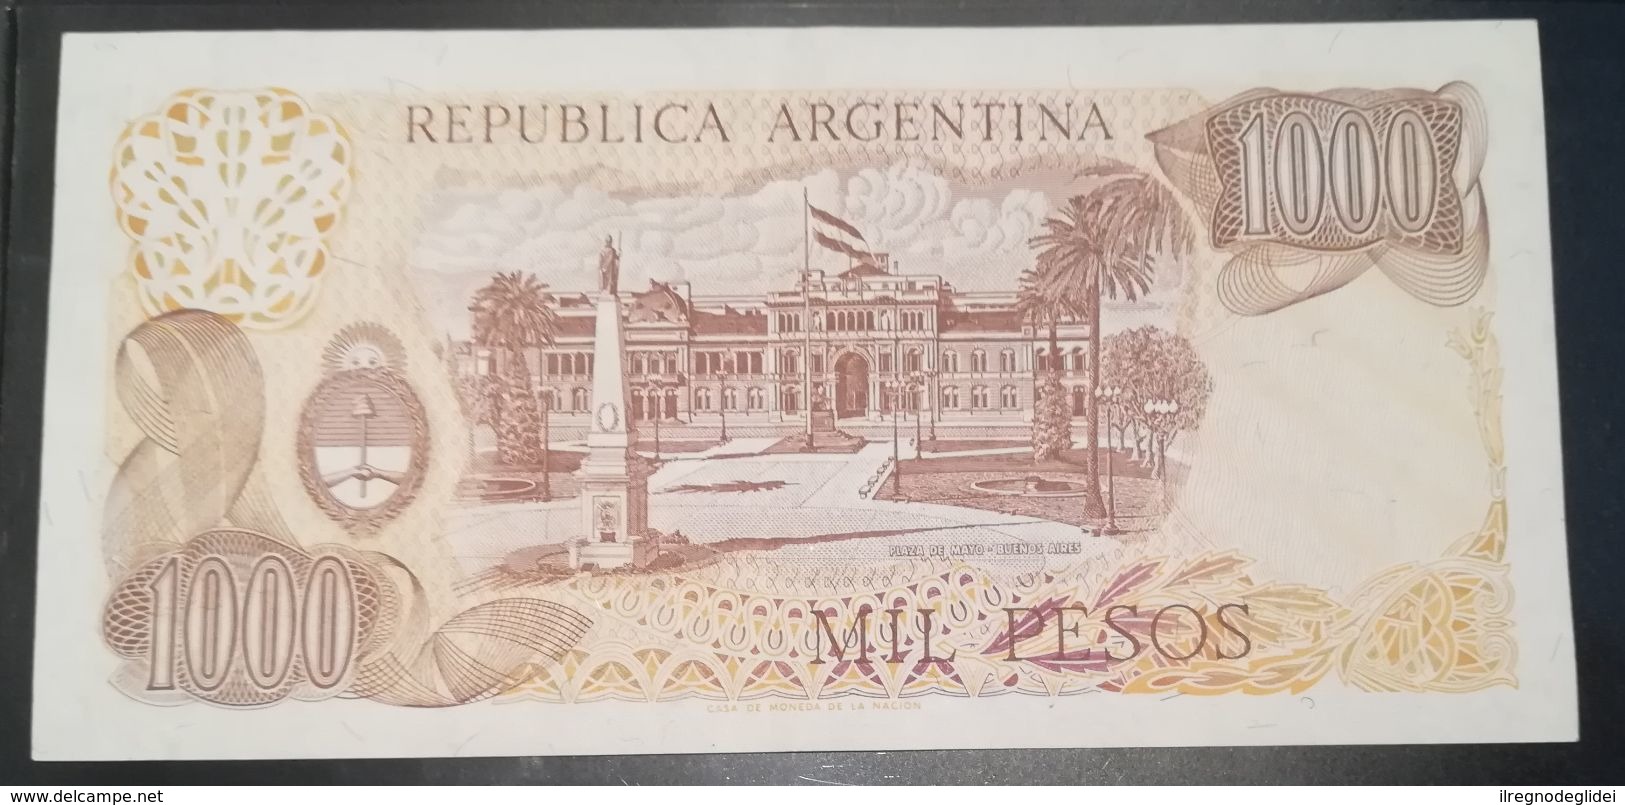 ARGENTINA - 1000 PESOS - FIOR DI STAMPA - CARTAMONETA - PAPER MONEY - Argentina